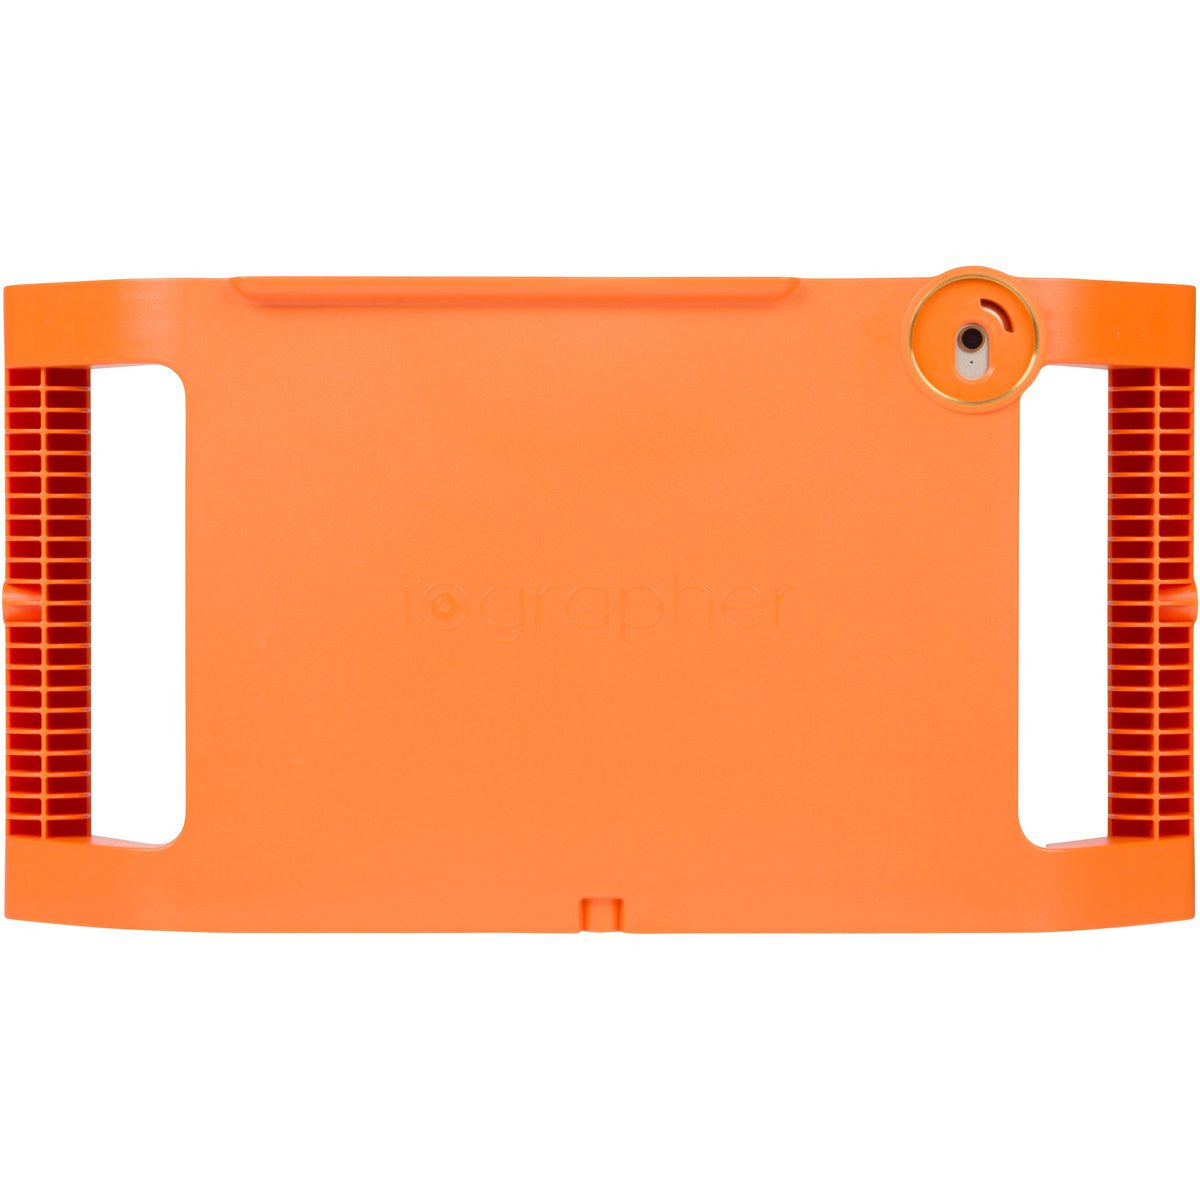 iPad Mini 4 Case - Orange